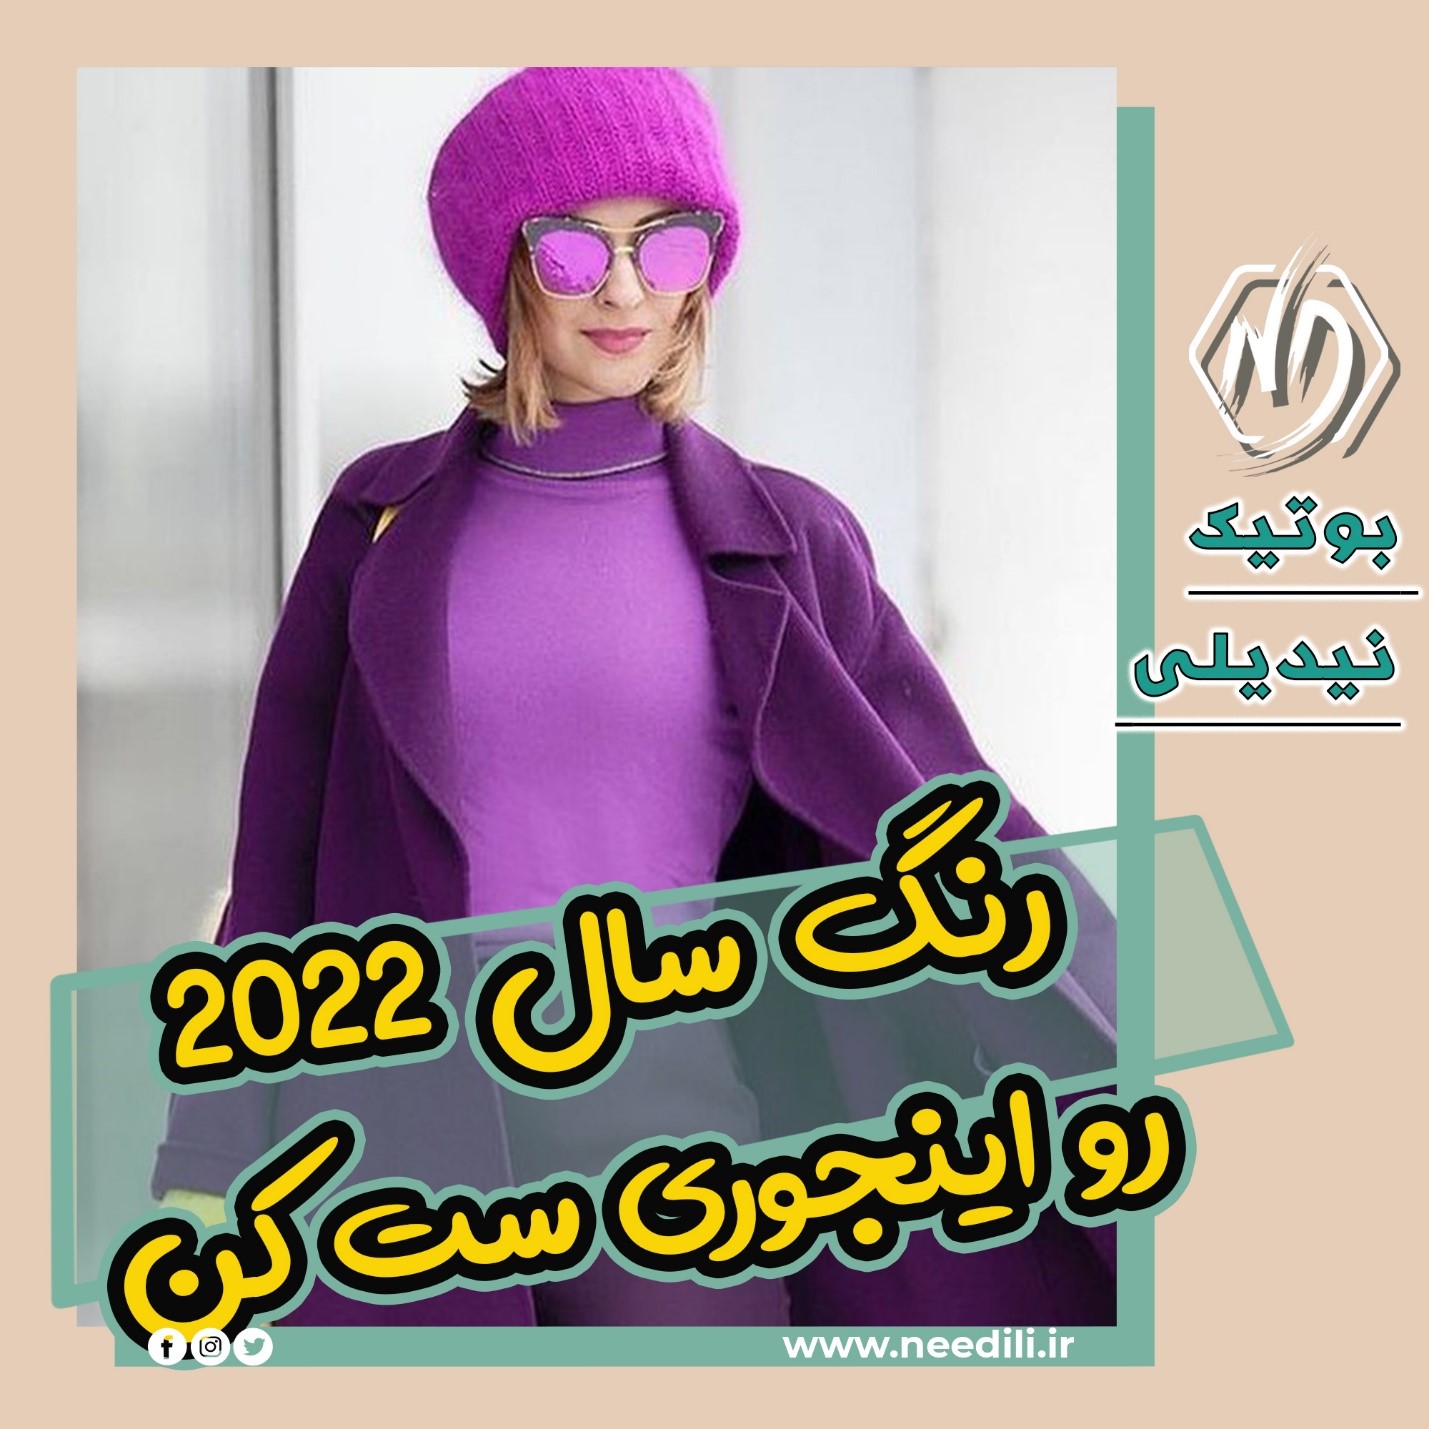 رنگ سال ۲۰۲۲ برای لباس | پوشاک زنانه نیدیلی